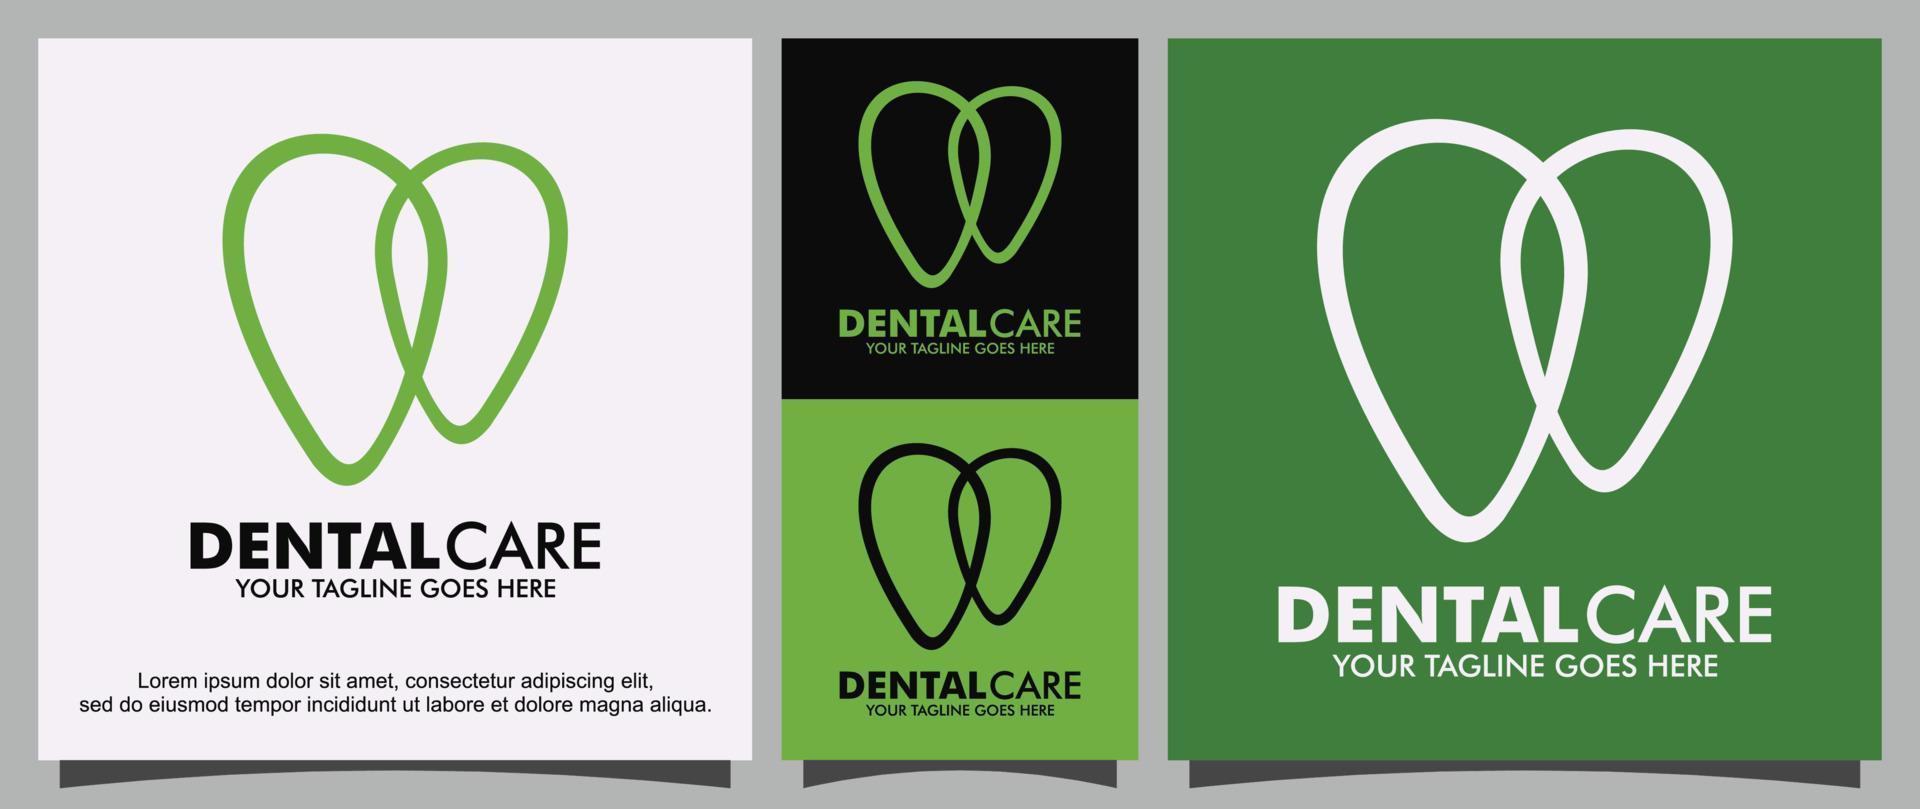 Dental checkup logo design template vector